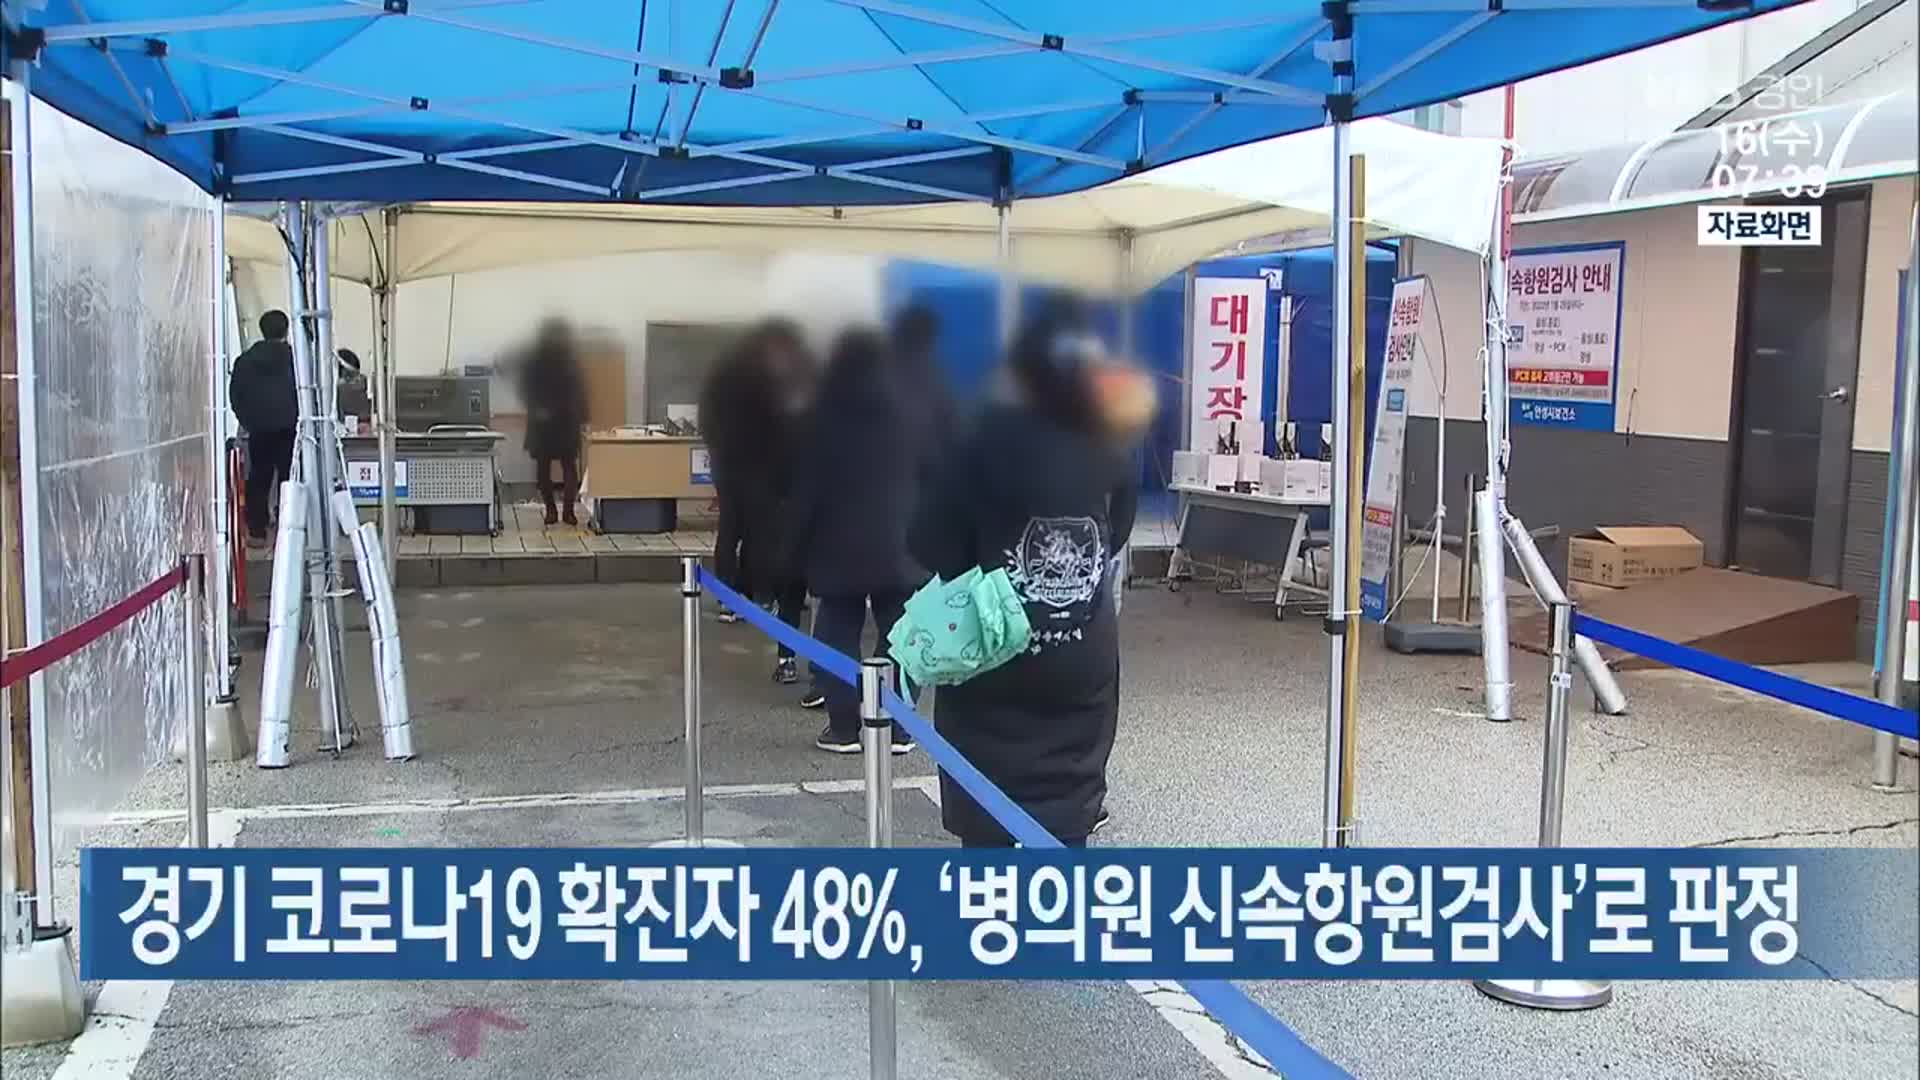 경기 코로나19 확진자 48%, ‘병의원 신속항원검사’로 판정